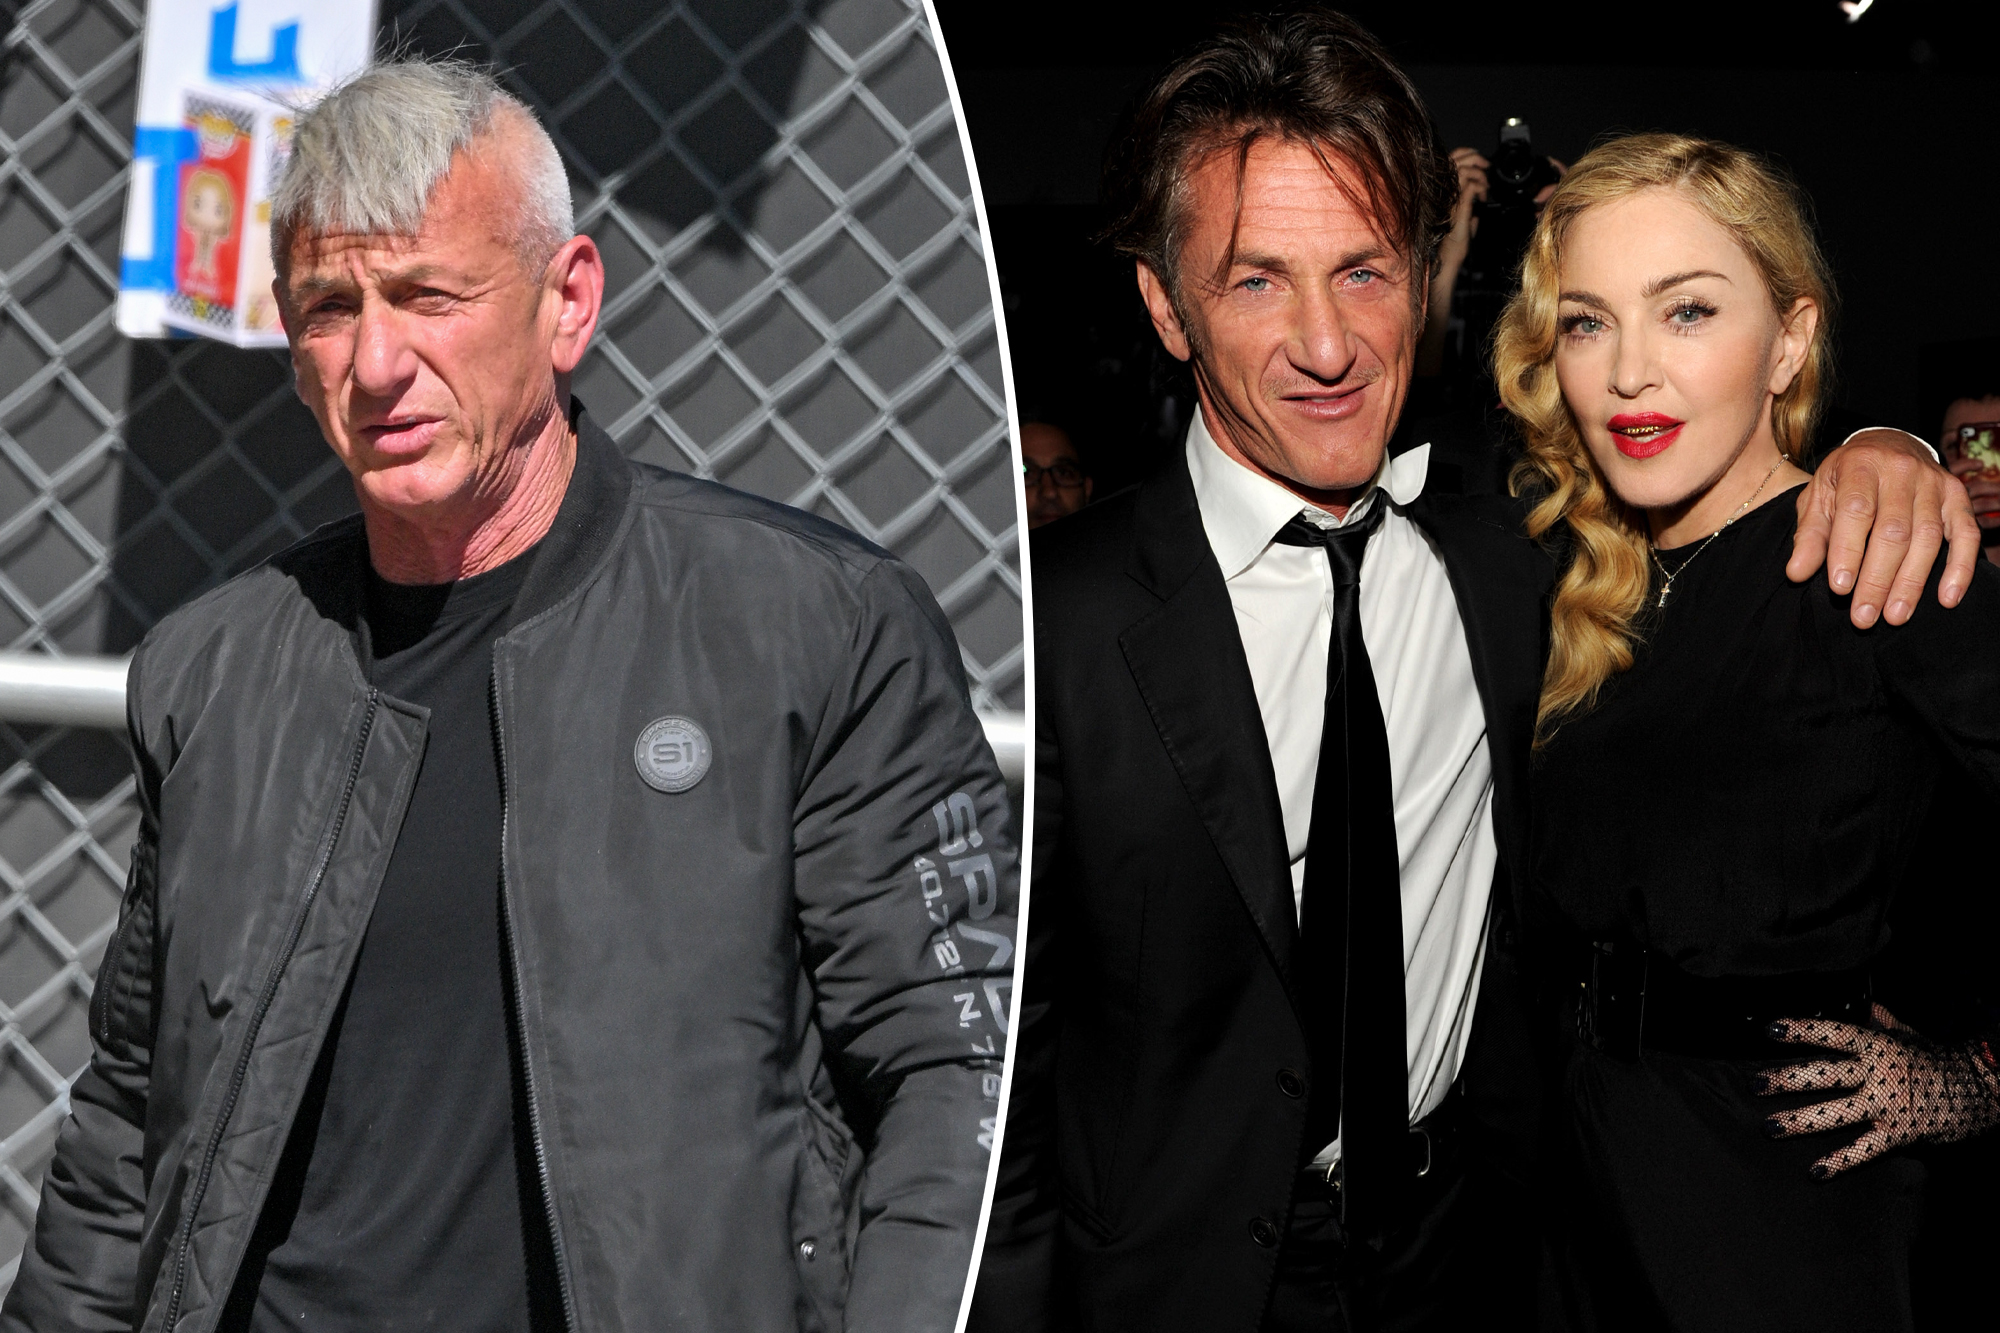 Sean Penn Sets the Record Straight: No Baseball Bat Drama with Madonna!